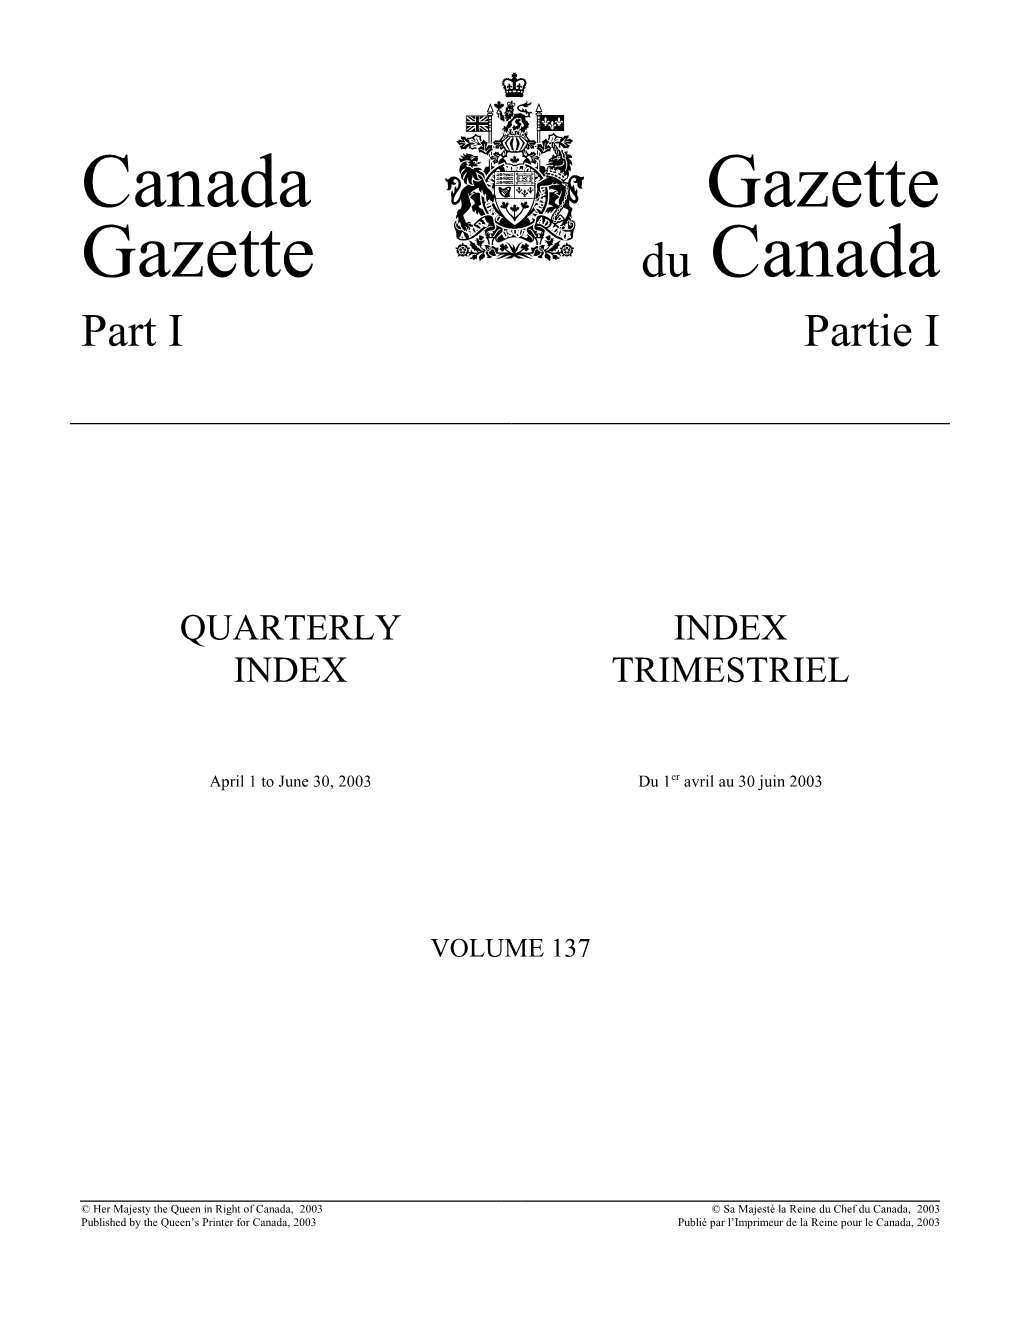 Canada Gazette, Part I, Quarterly Index